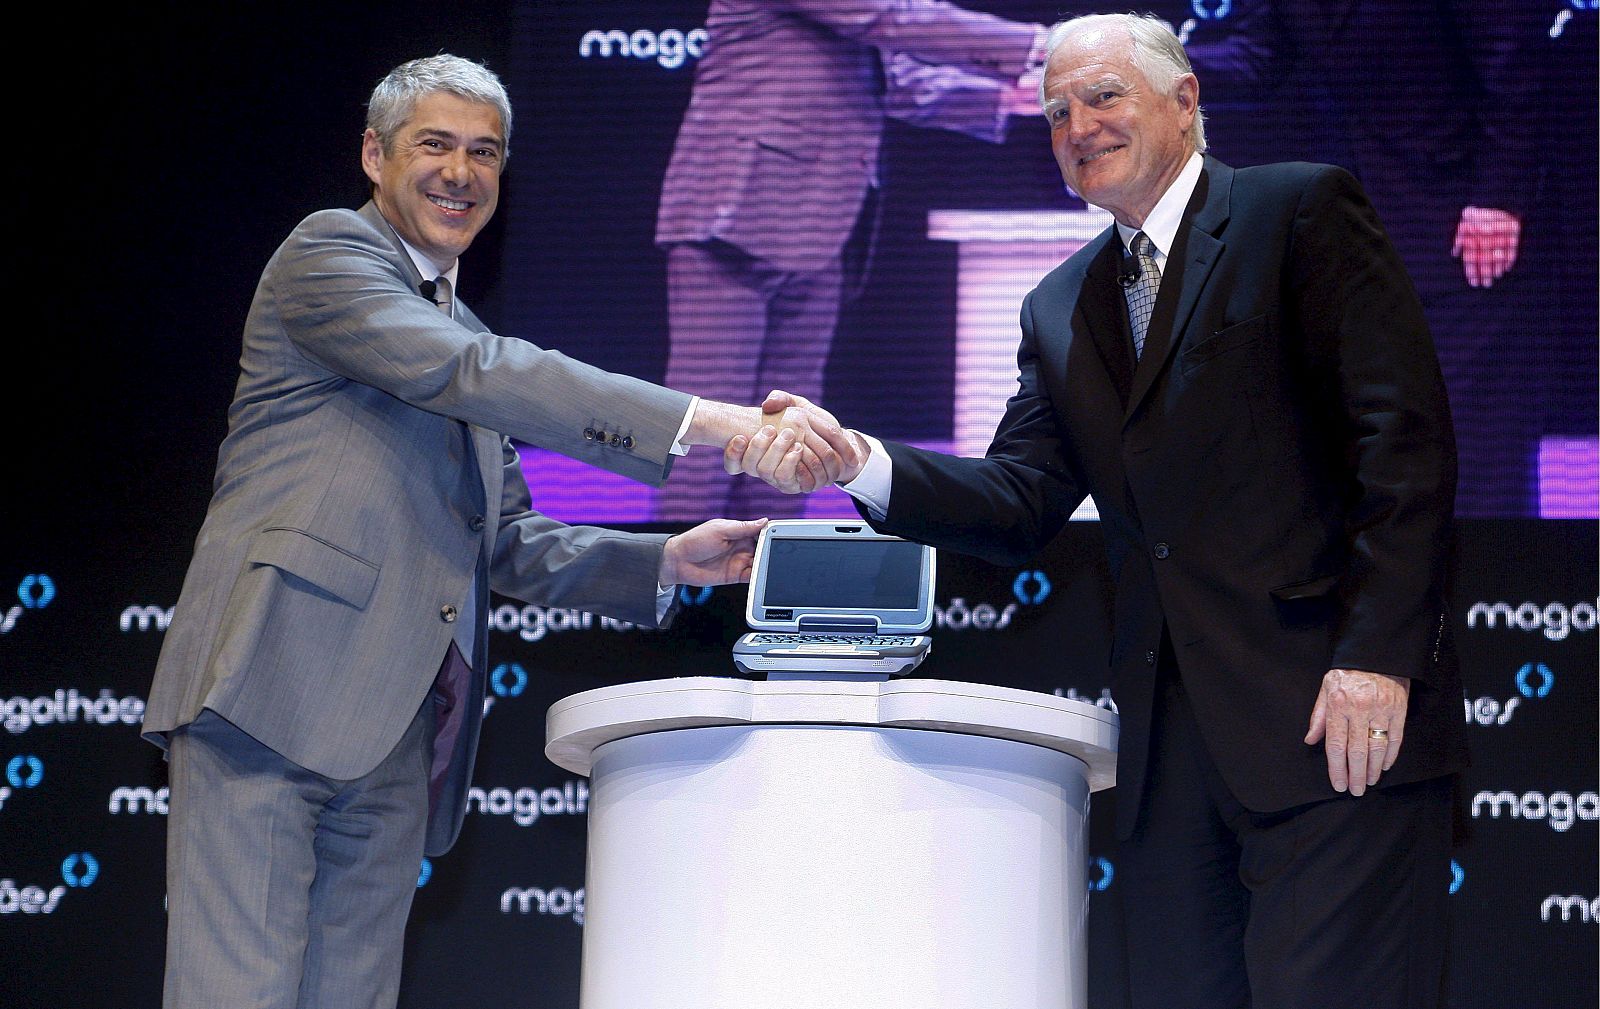 El primer ministro portugués, José Sócrates, y el jefe ejecutivo de Intel, Craig Barrett durante la presentación de Magalhaes, el portátil barato para niños con pocos recursos.